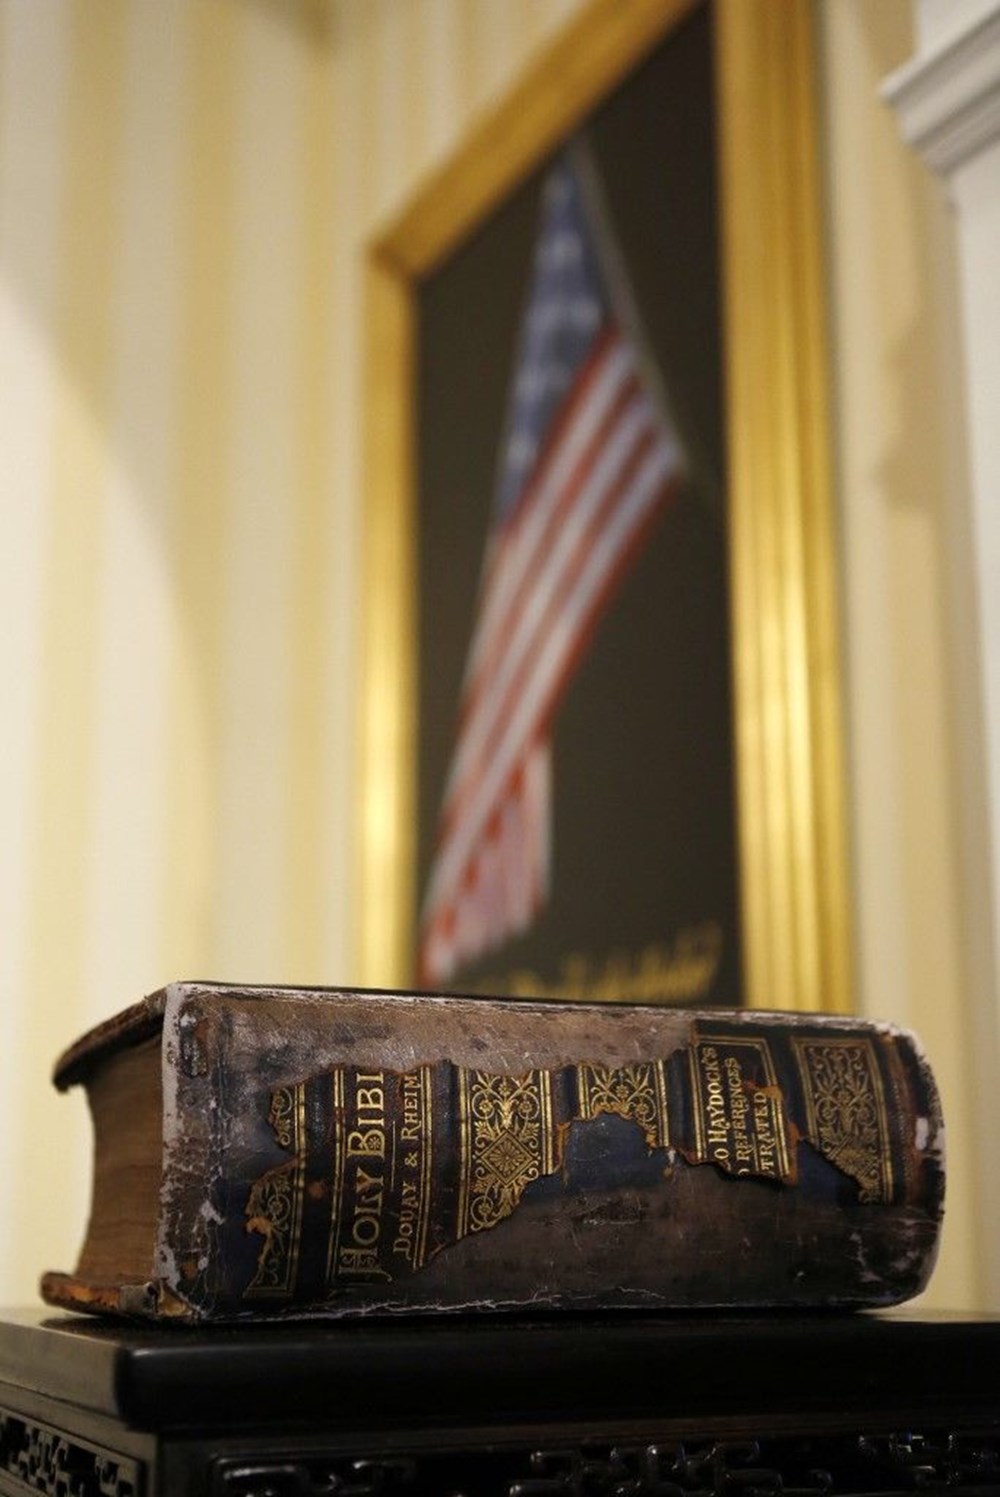 Joe Biden, aile yadigarı Kelt haçlı İncil ile yemin etti.